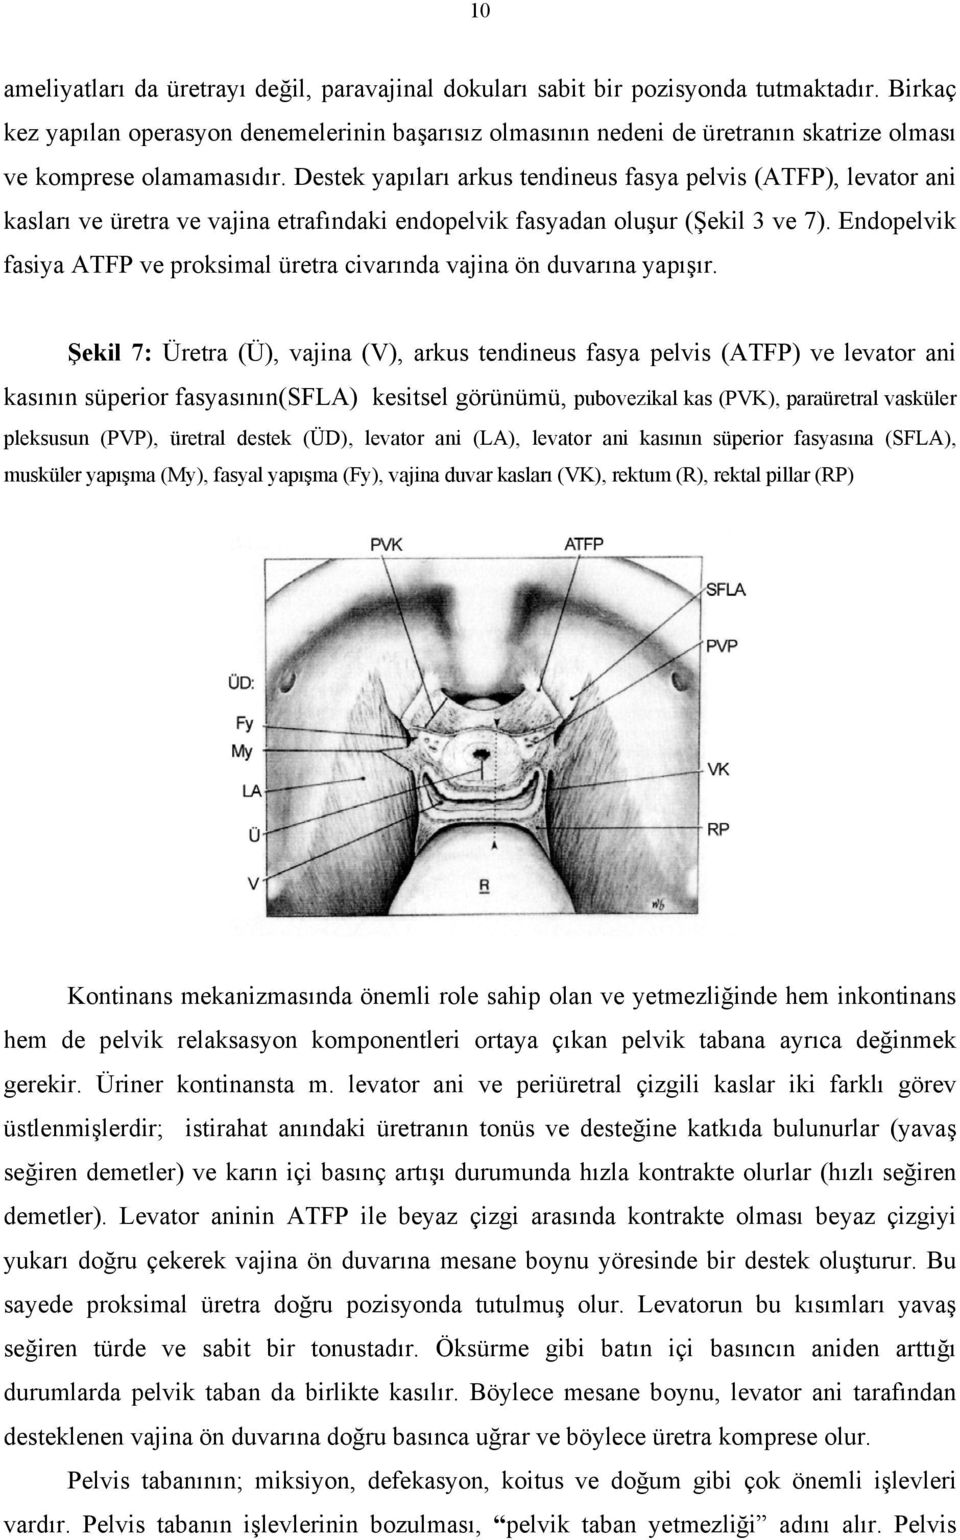 Destek yapıları arkus tendineus fasya pelvis (ATFP), levator ani kasları ve üretra ve vajina etrafındaki endopelvik fasyadan oluşur (Şekil 3 ve 7).